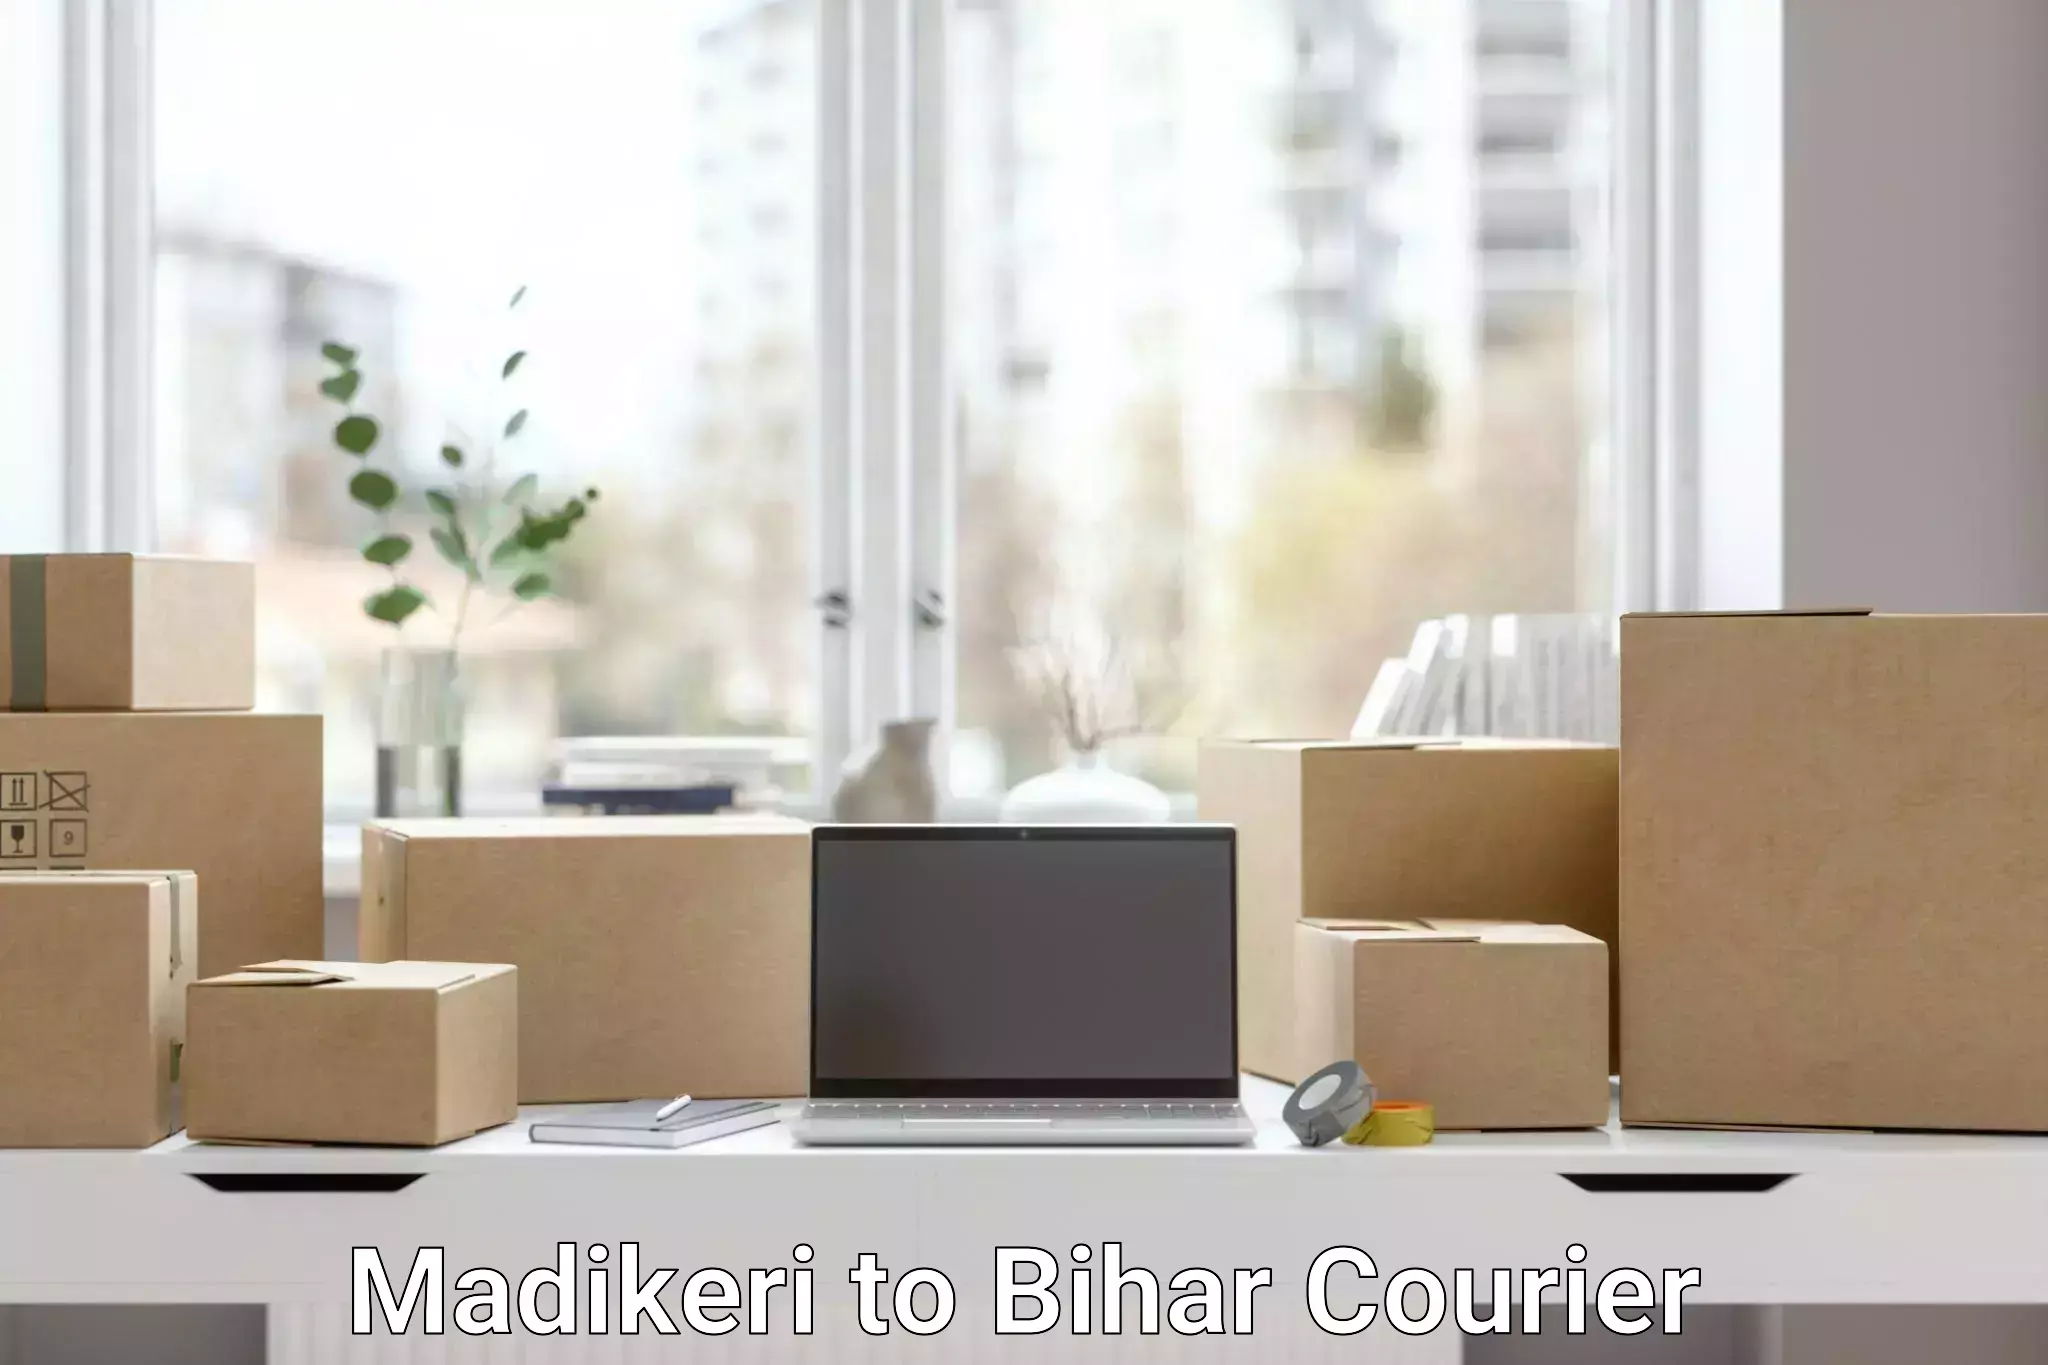 Courier service innovation Madikeri to Chakai